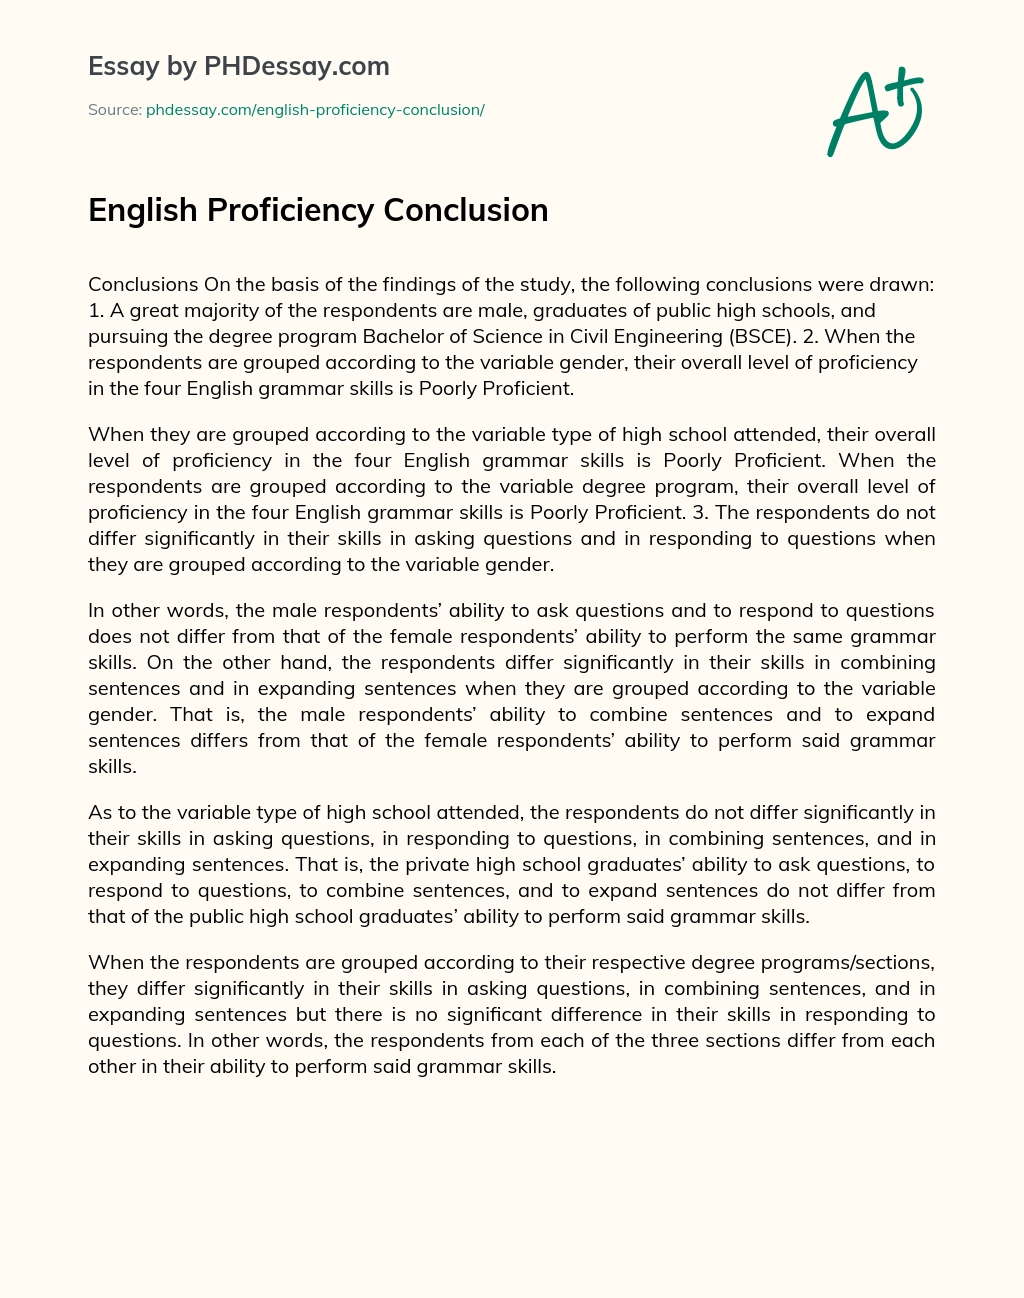 English Proficiency Conclusion essay